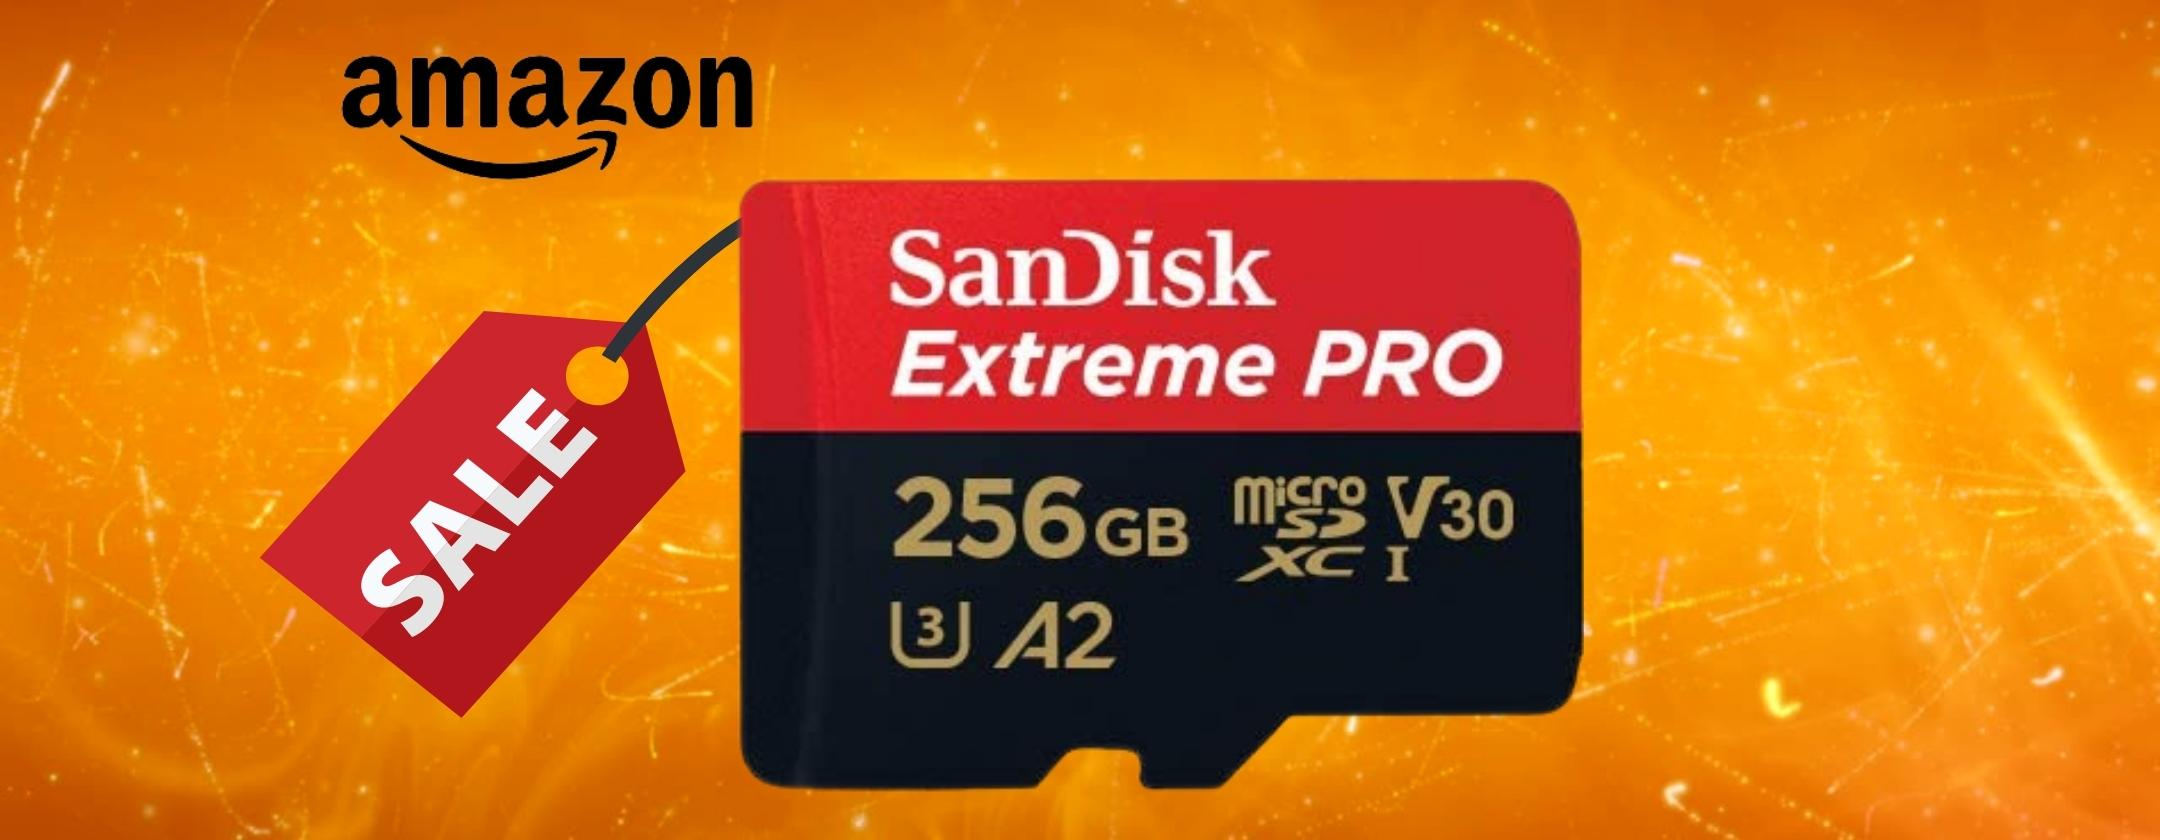 SanDisk Extreme Pro: microSD da 256gGB in SCONTO PESANTE